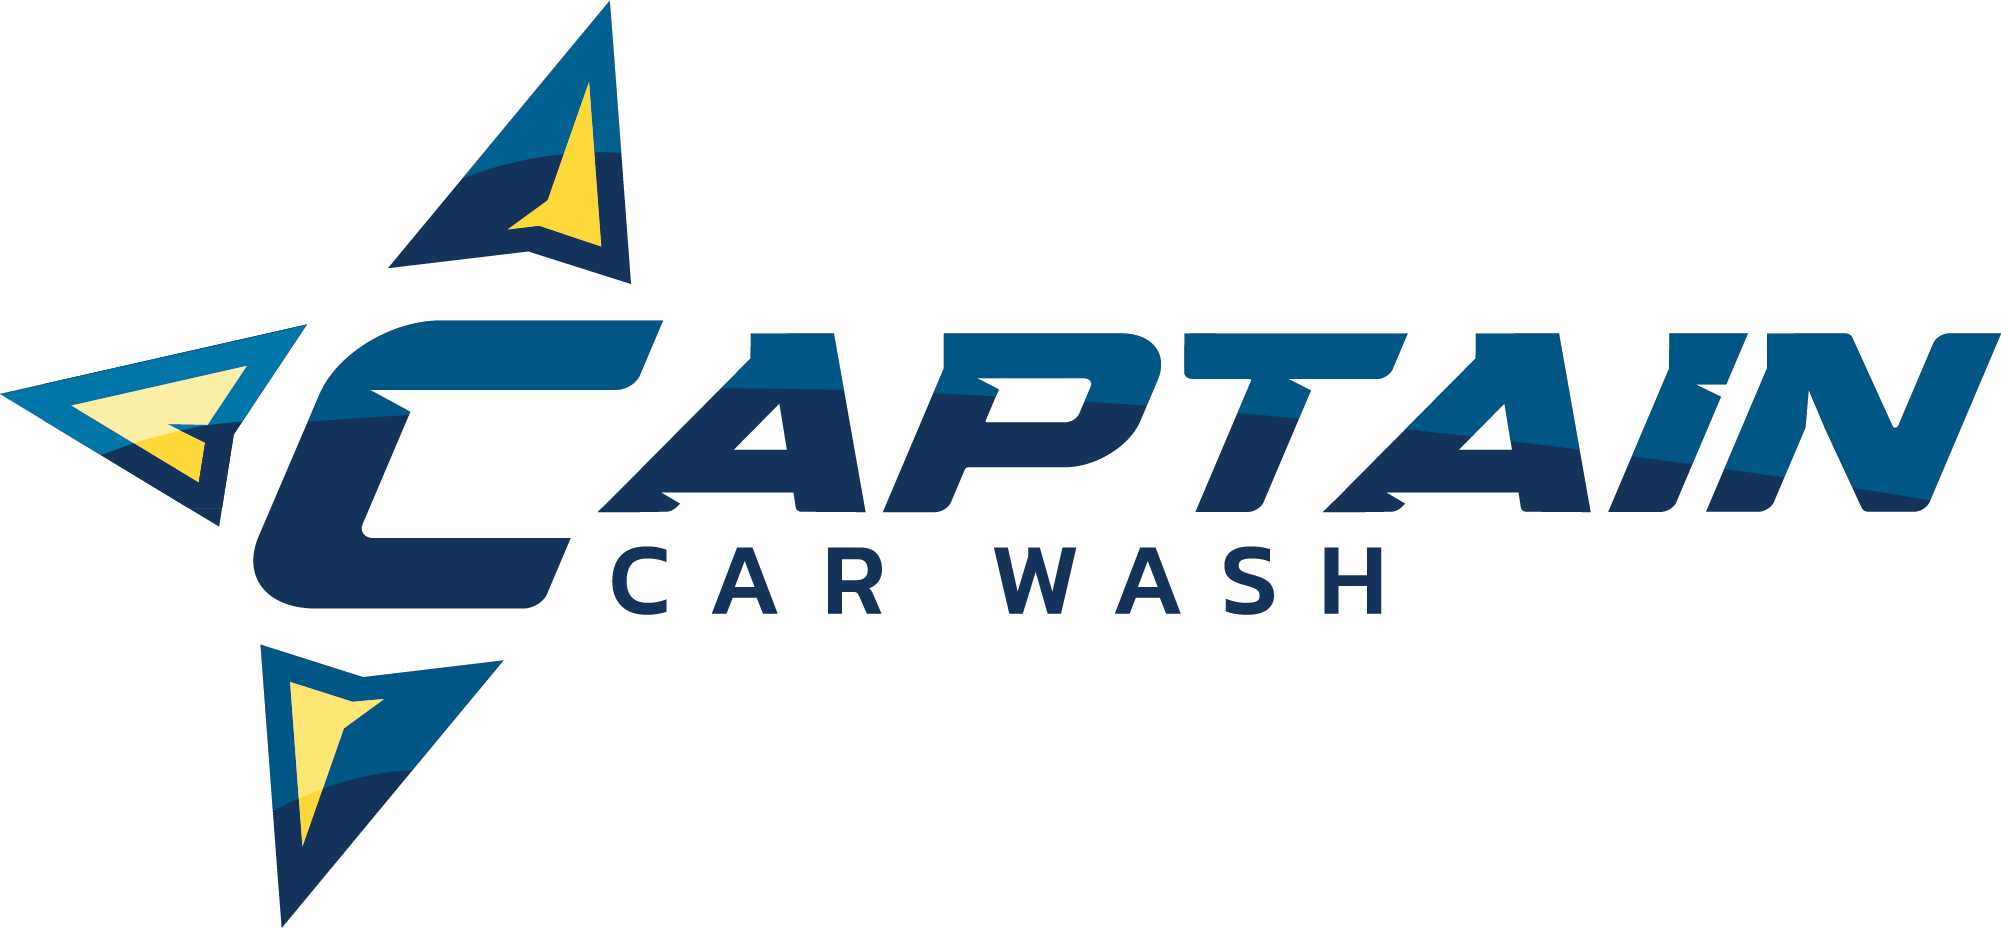 Captain Car Wash